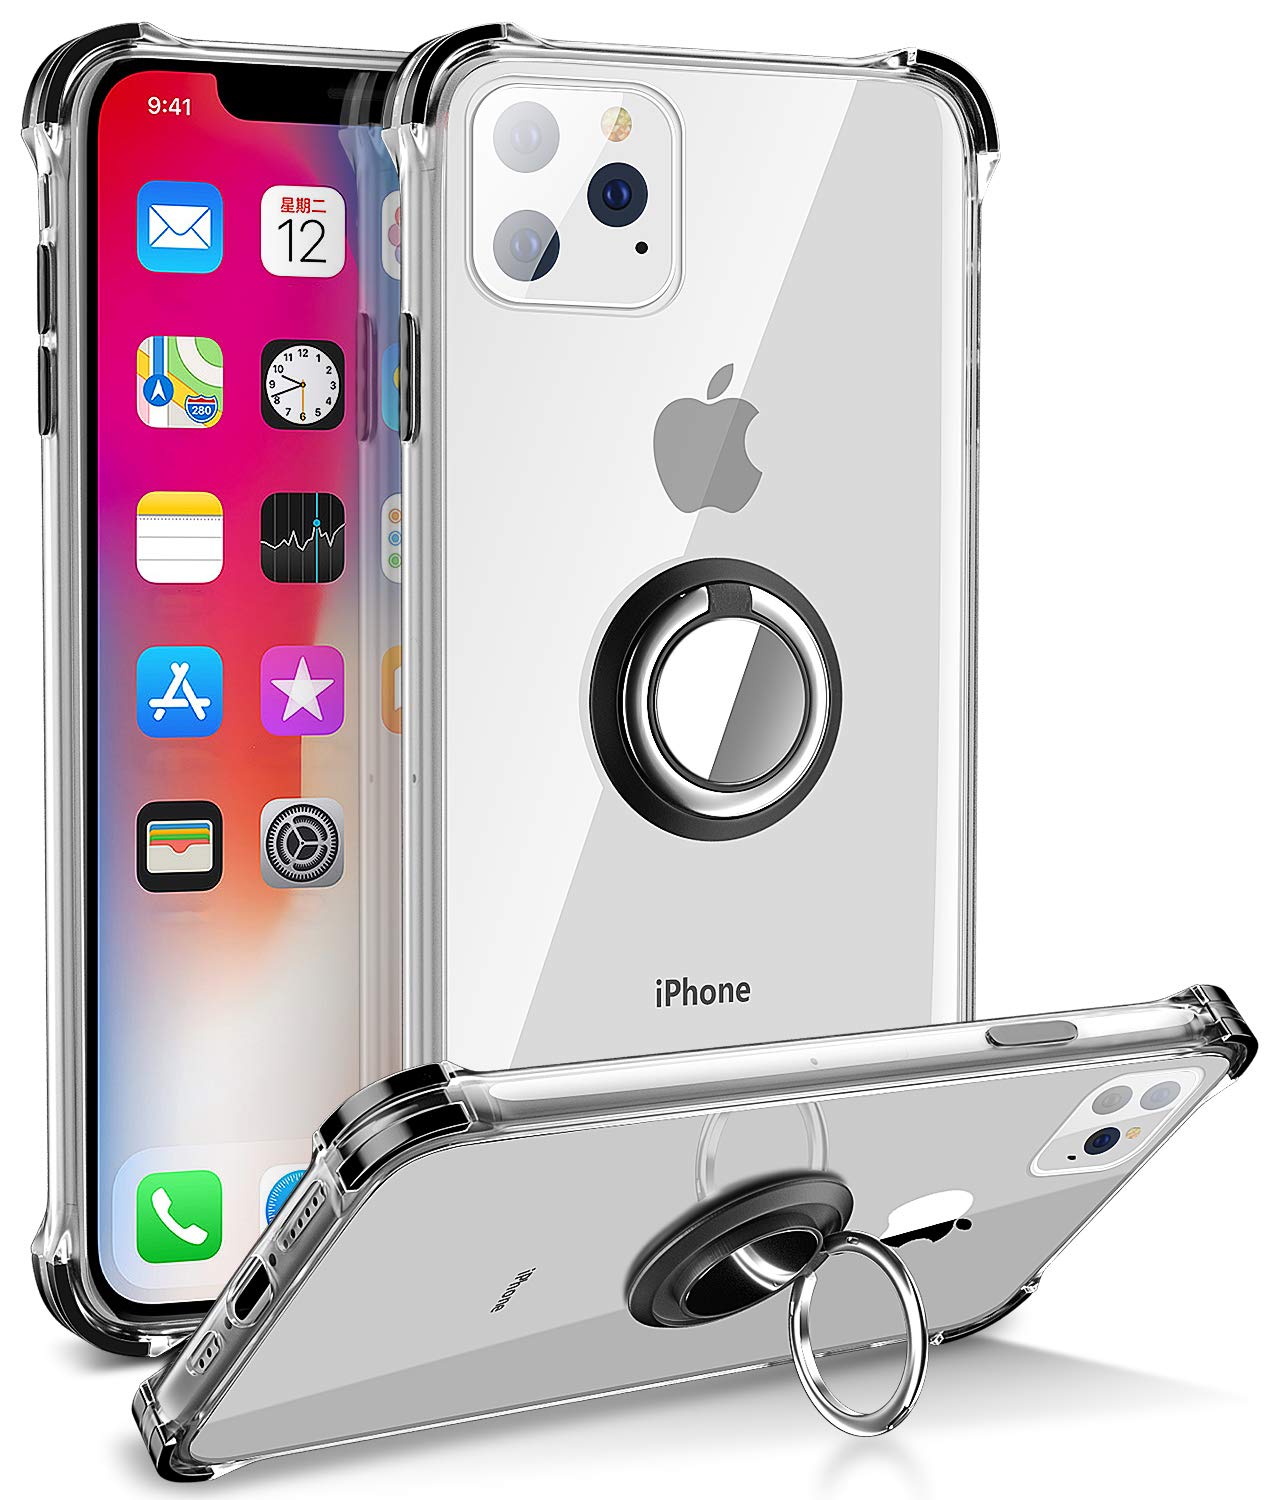 Daupin-iPhone-11-kickstand-case